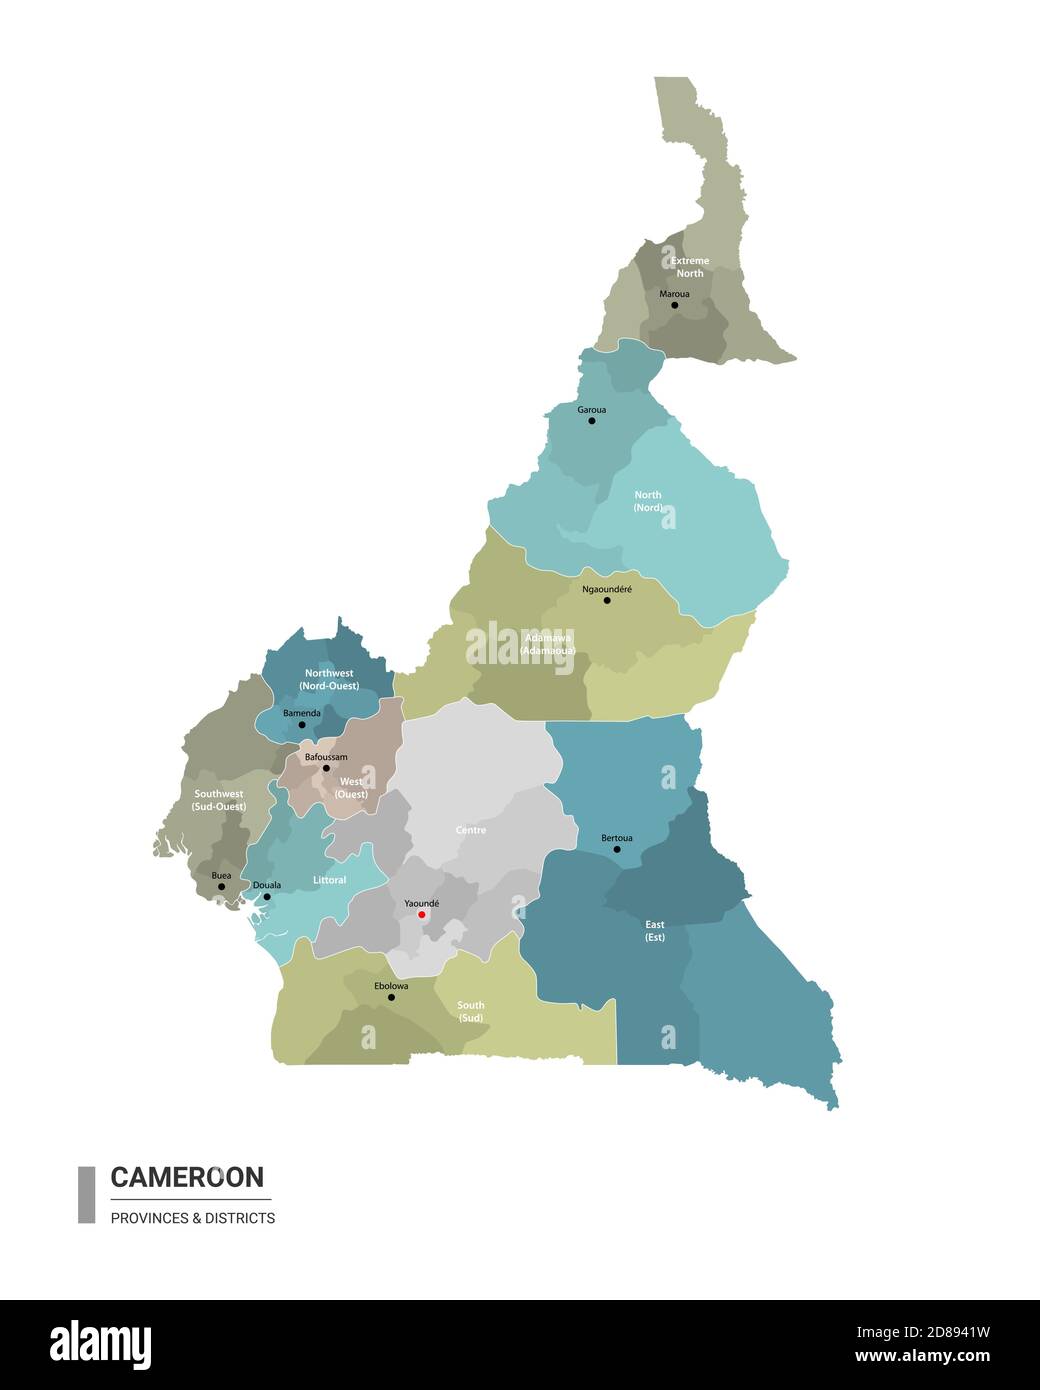 Carte détaillée de l'higt du Cameroun avec subdivisions. Carte administrative du Cameroun avec le nom des districts et des villes, colorée par les Etats et le dist administratif Illustration de Vecteur